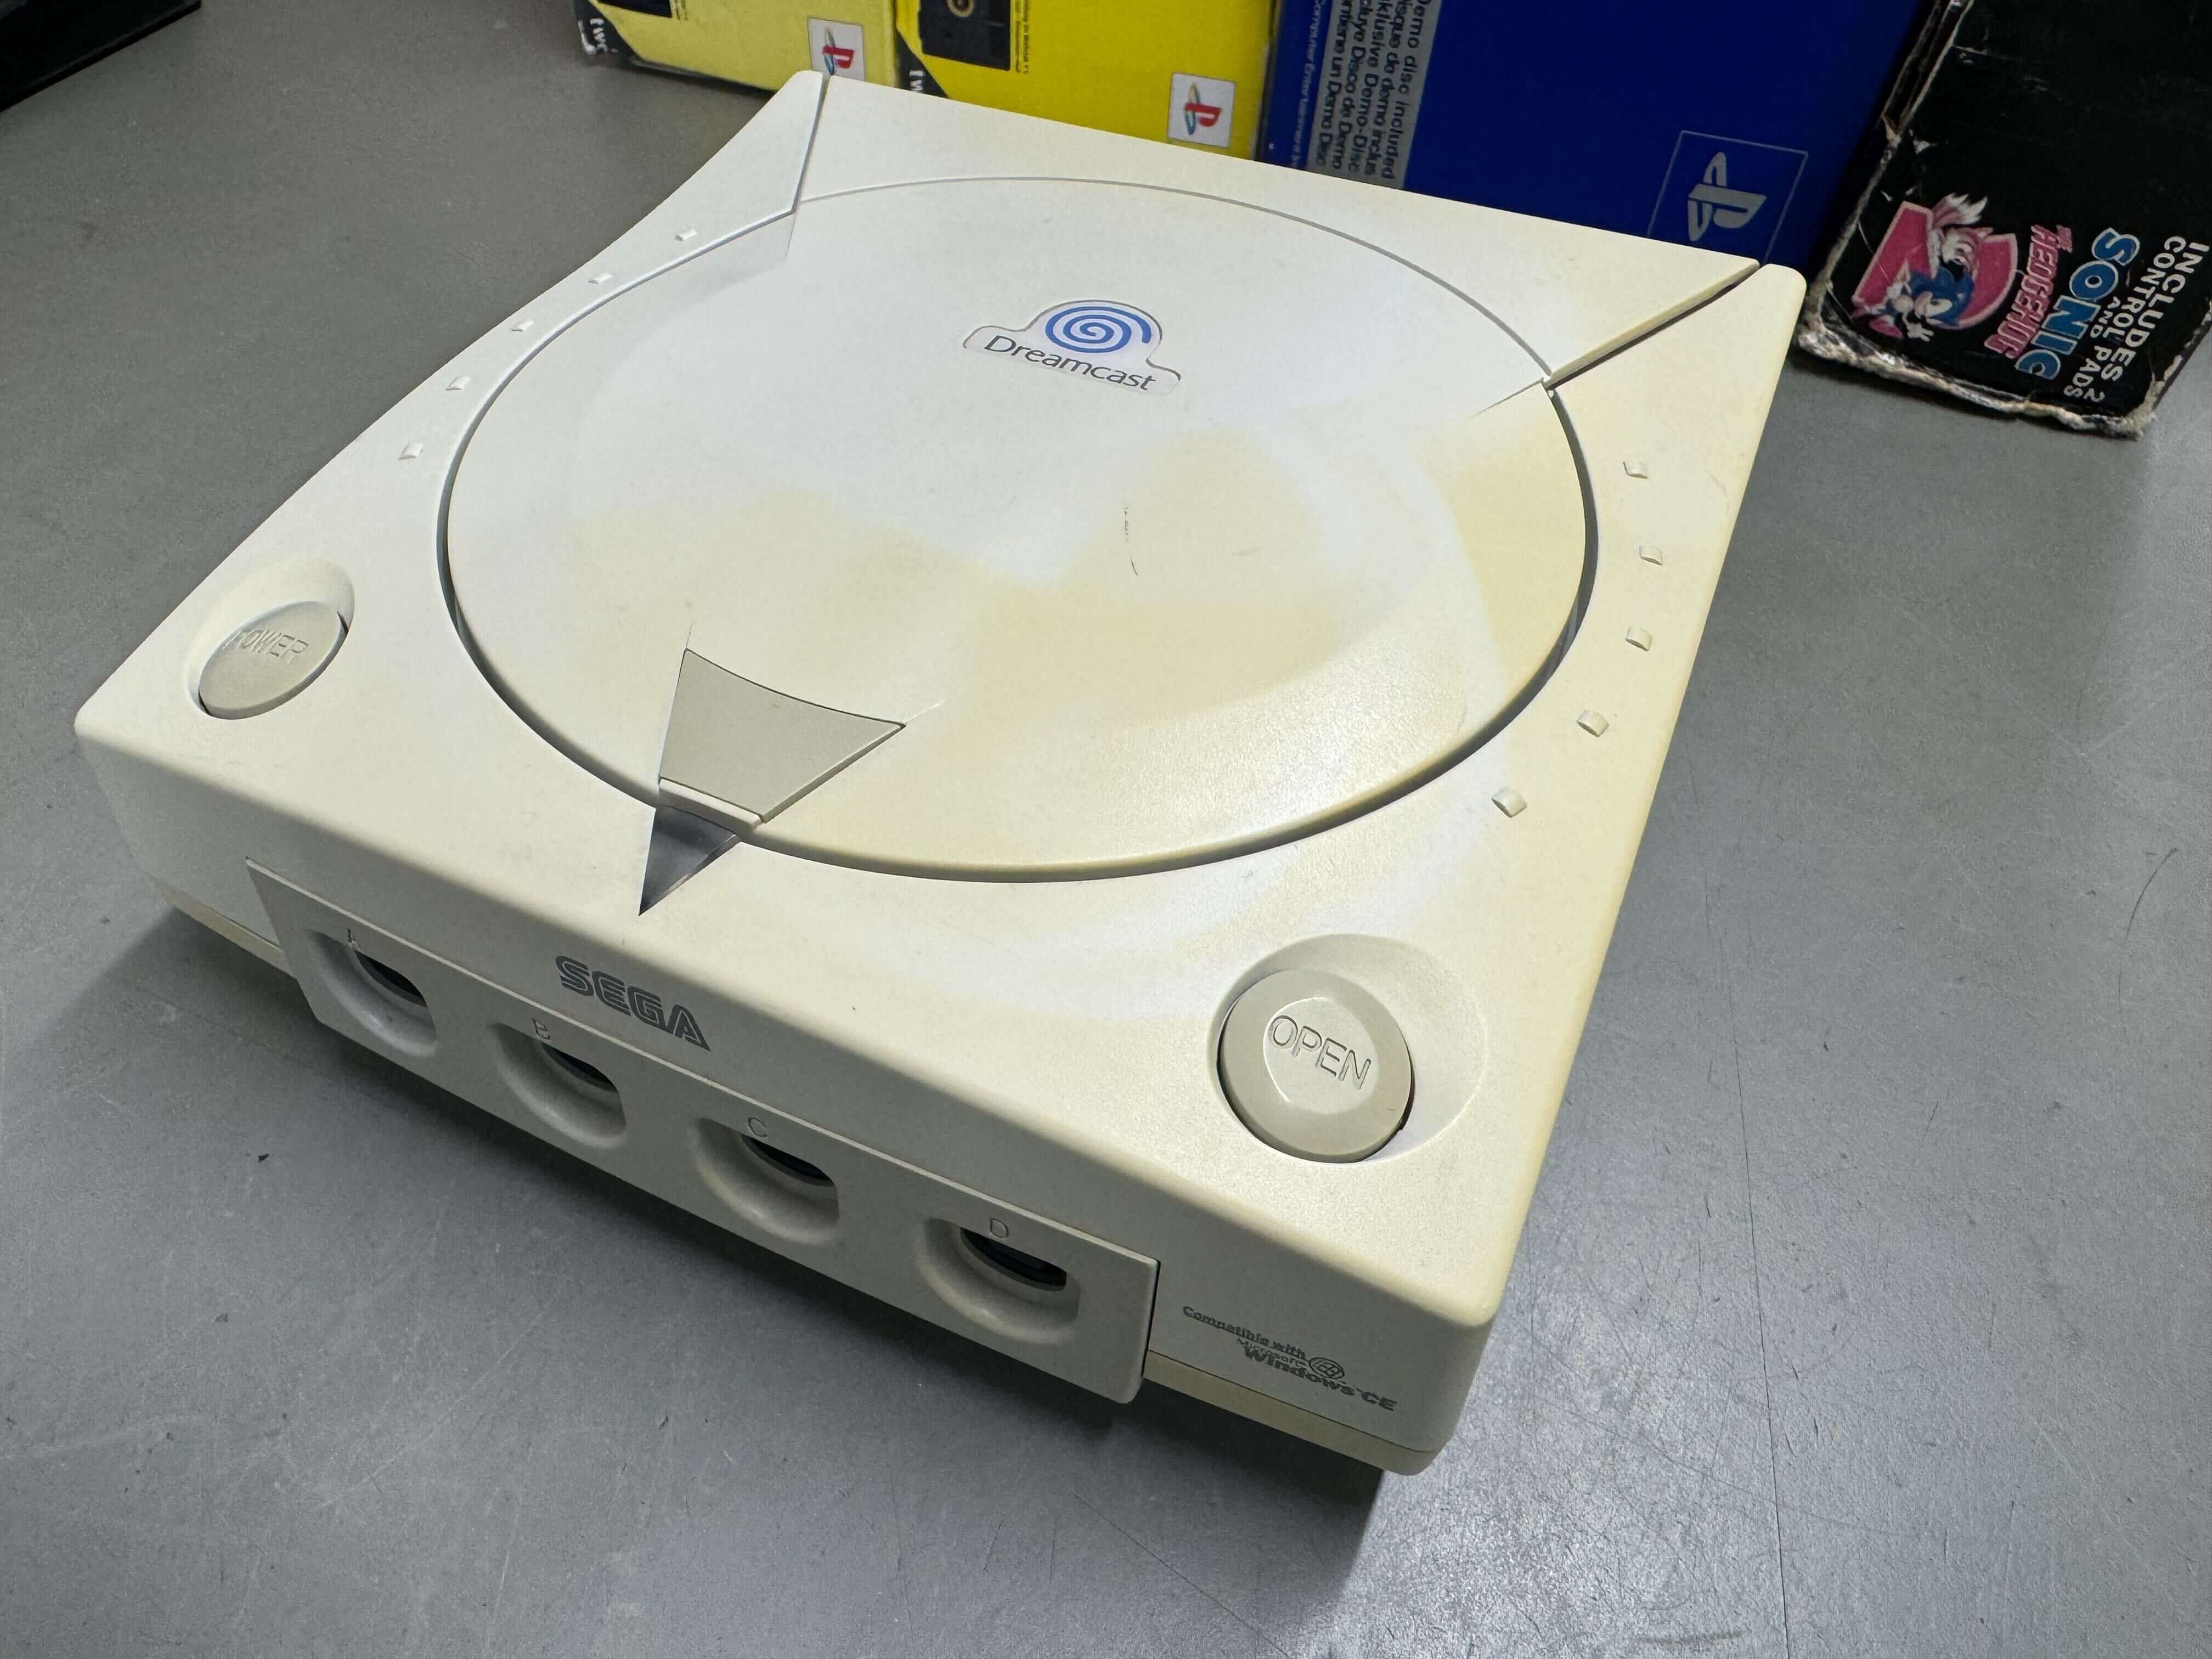 Sega Dreamcast Console - Sega Dreamcast (Laser makes noise, but works) - Outlet - Outlet - 2